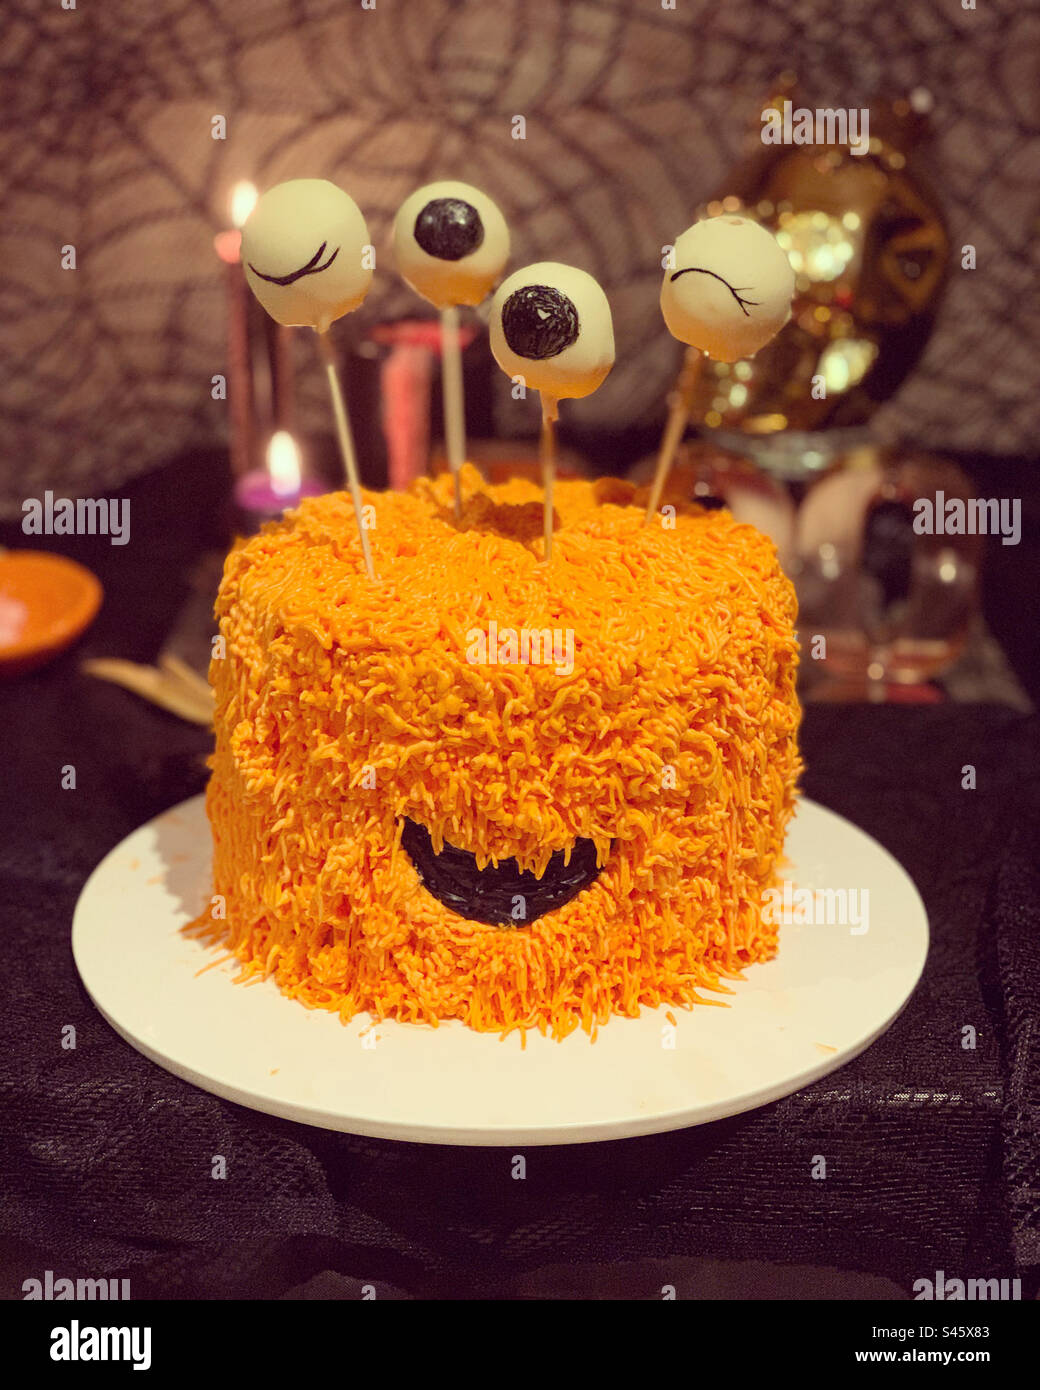 Monster cake for Halloween Stock Photo